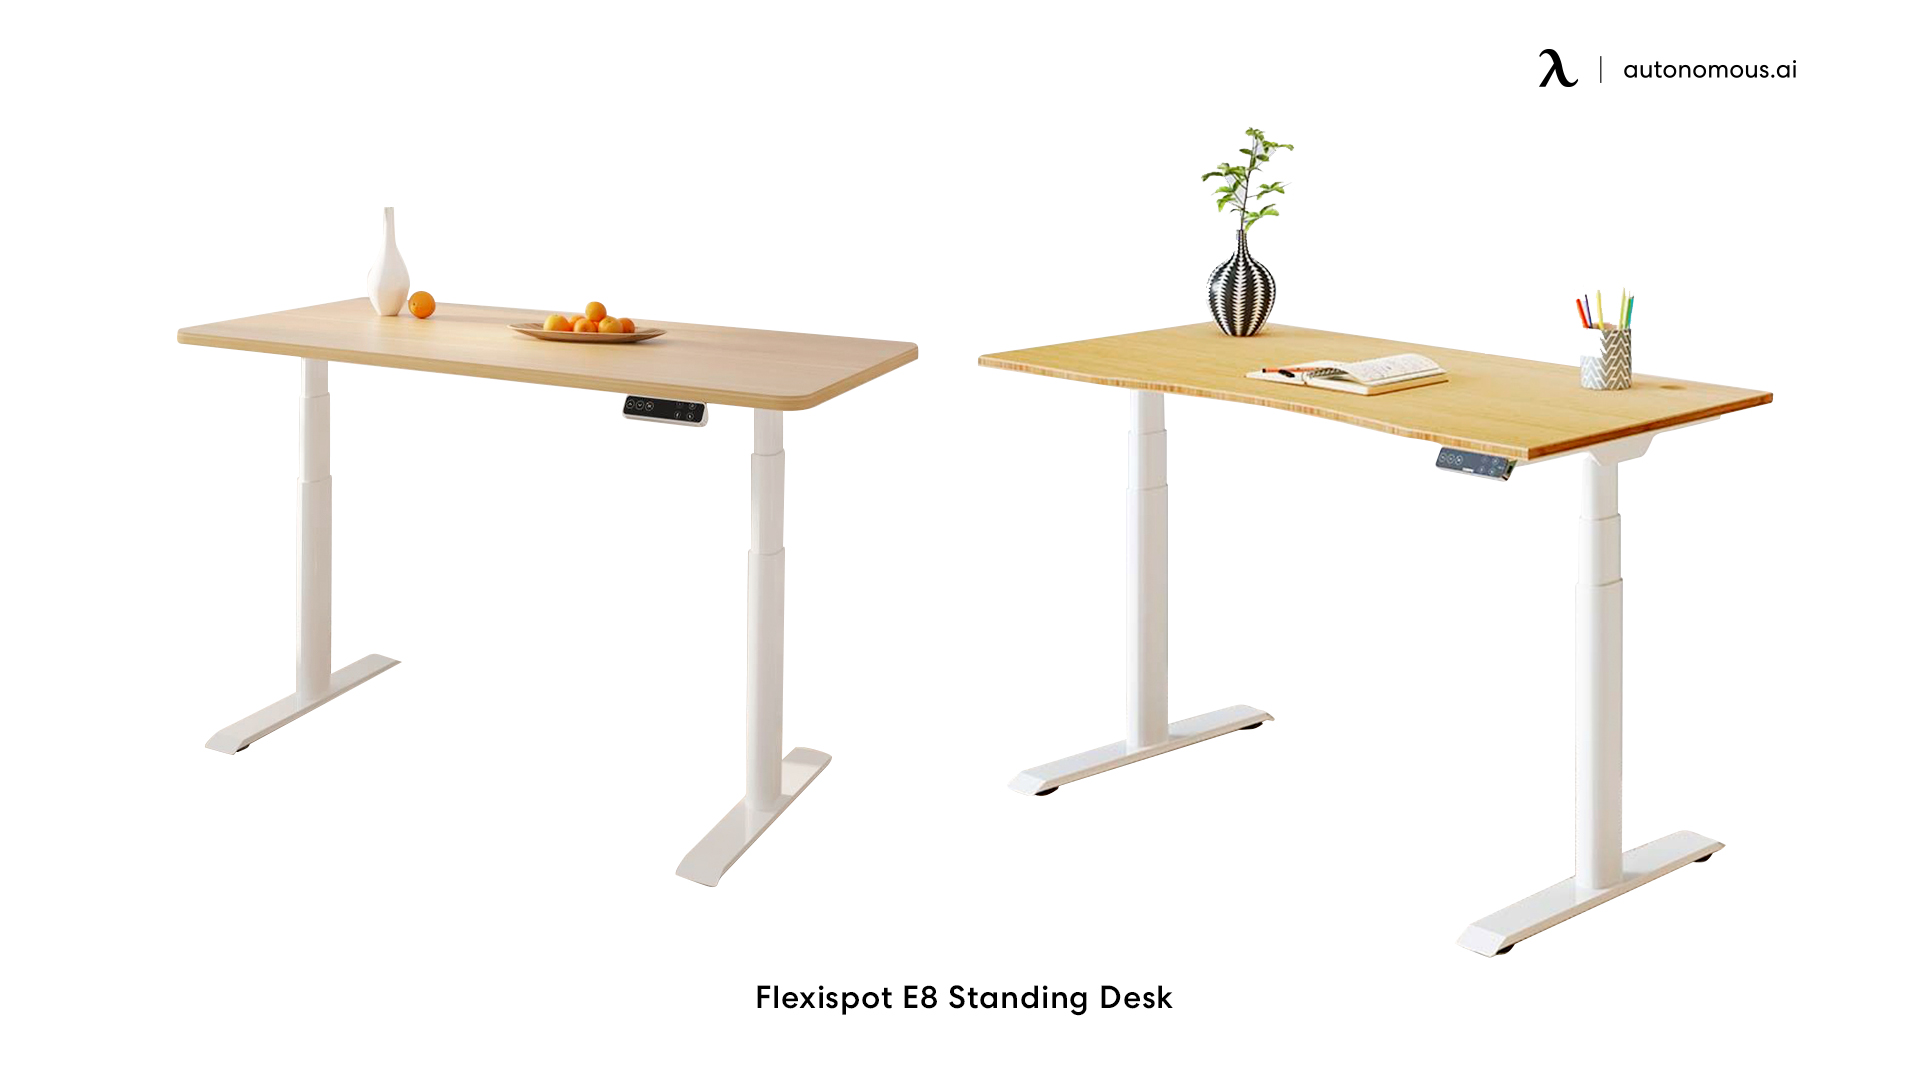 FlexiSpot E8 Standing Desk ergonomic adjustable desk